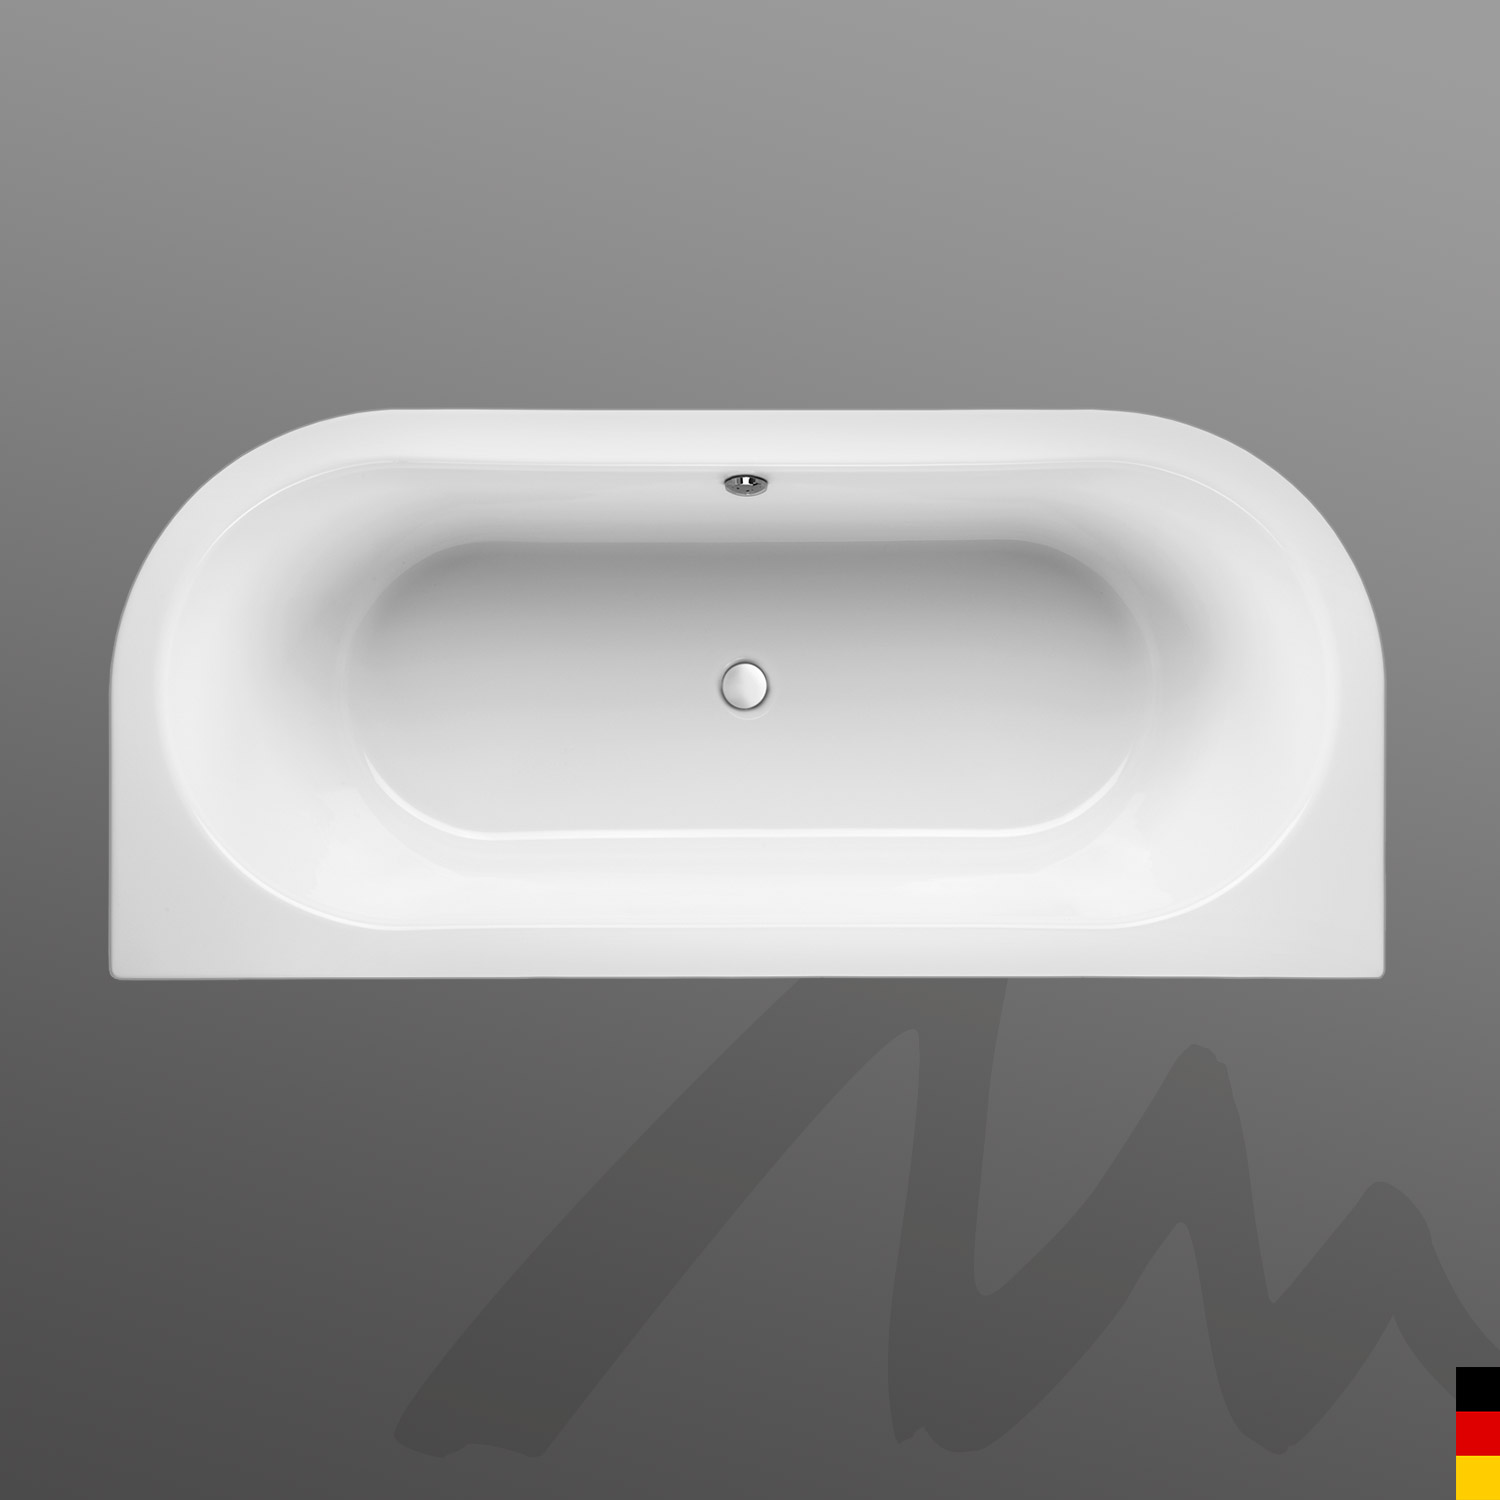 Mauersberger Badewanne Oval Primo 2 - 180/80 duo mit Acryl-Schürze/Pane  180x80x45  Farbe:weiß